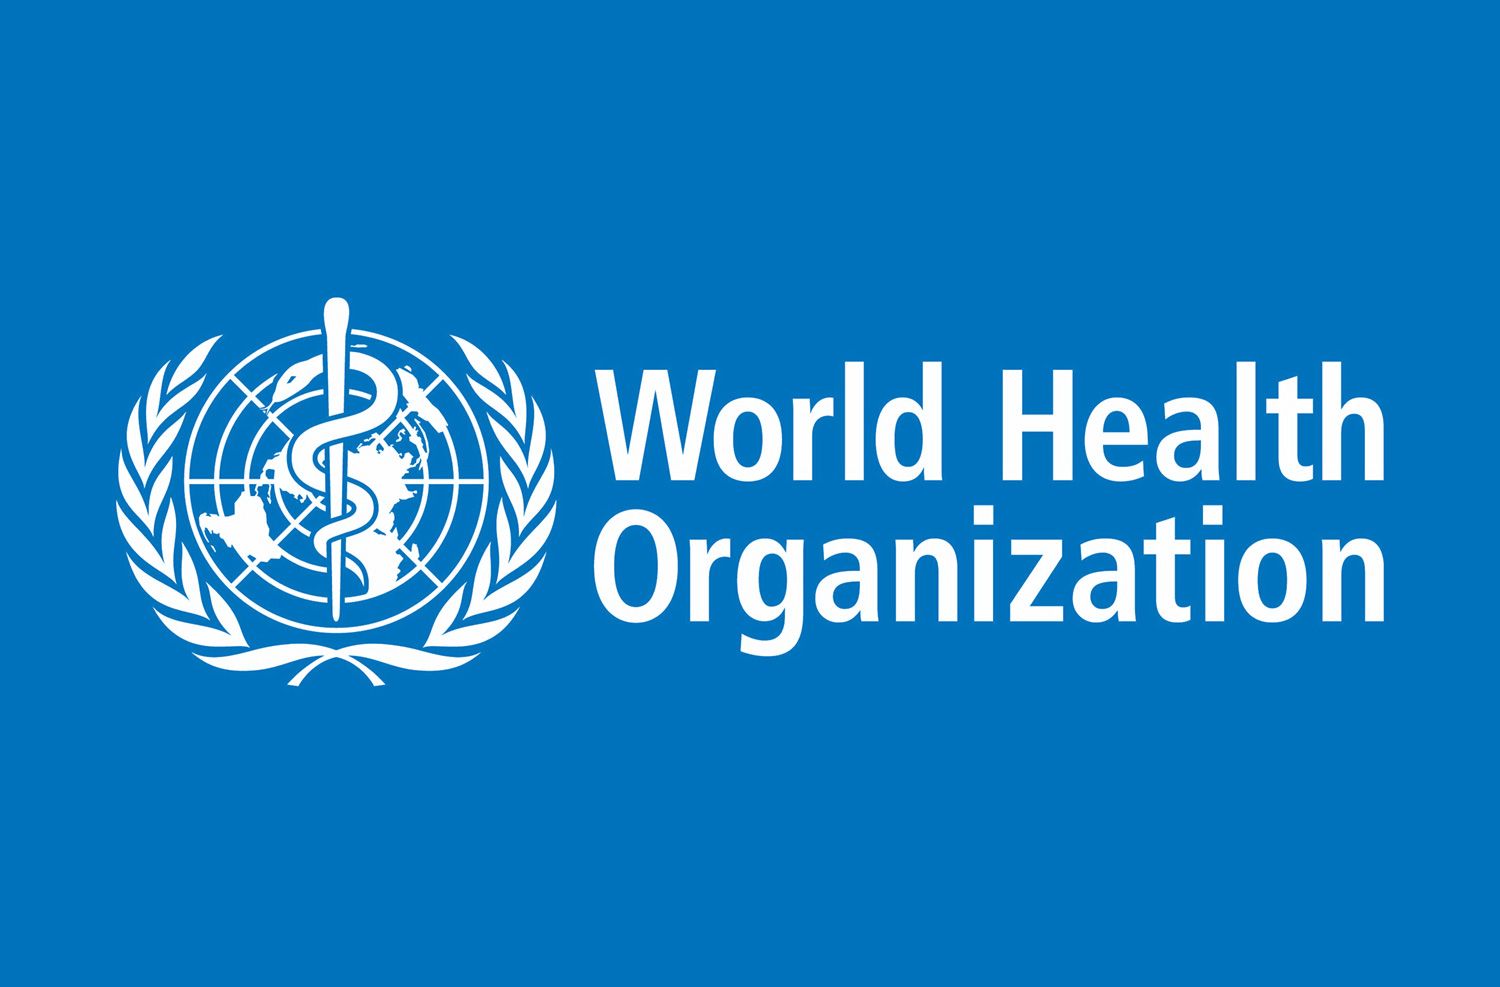 2504x804px 264.75 KB World Health Organization